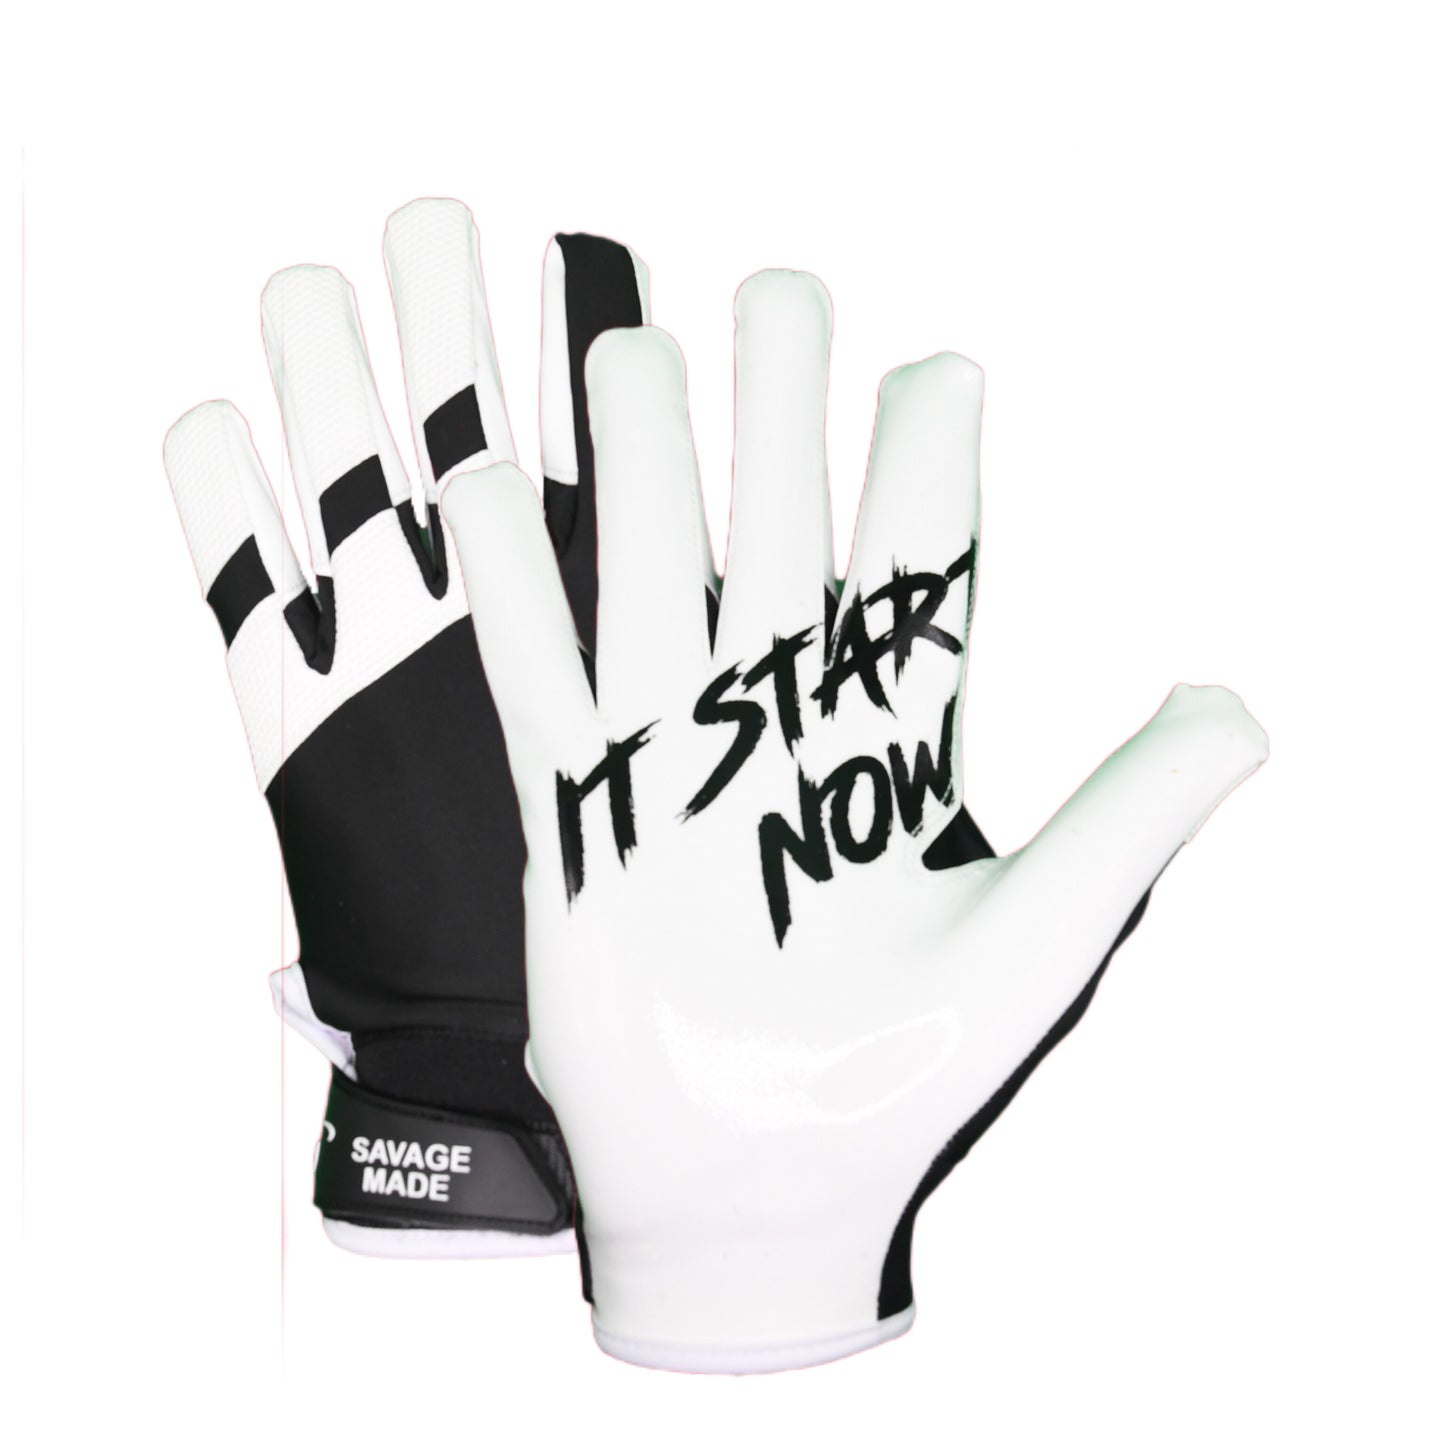 "It Starts Now" Gloves